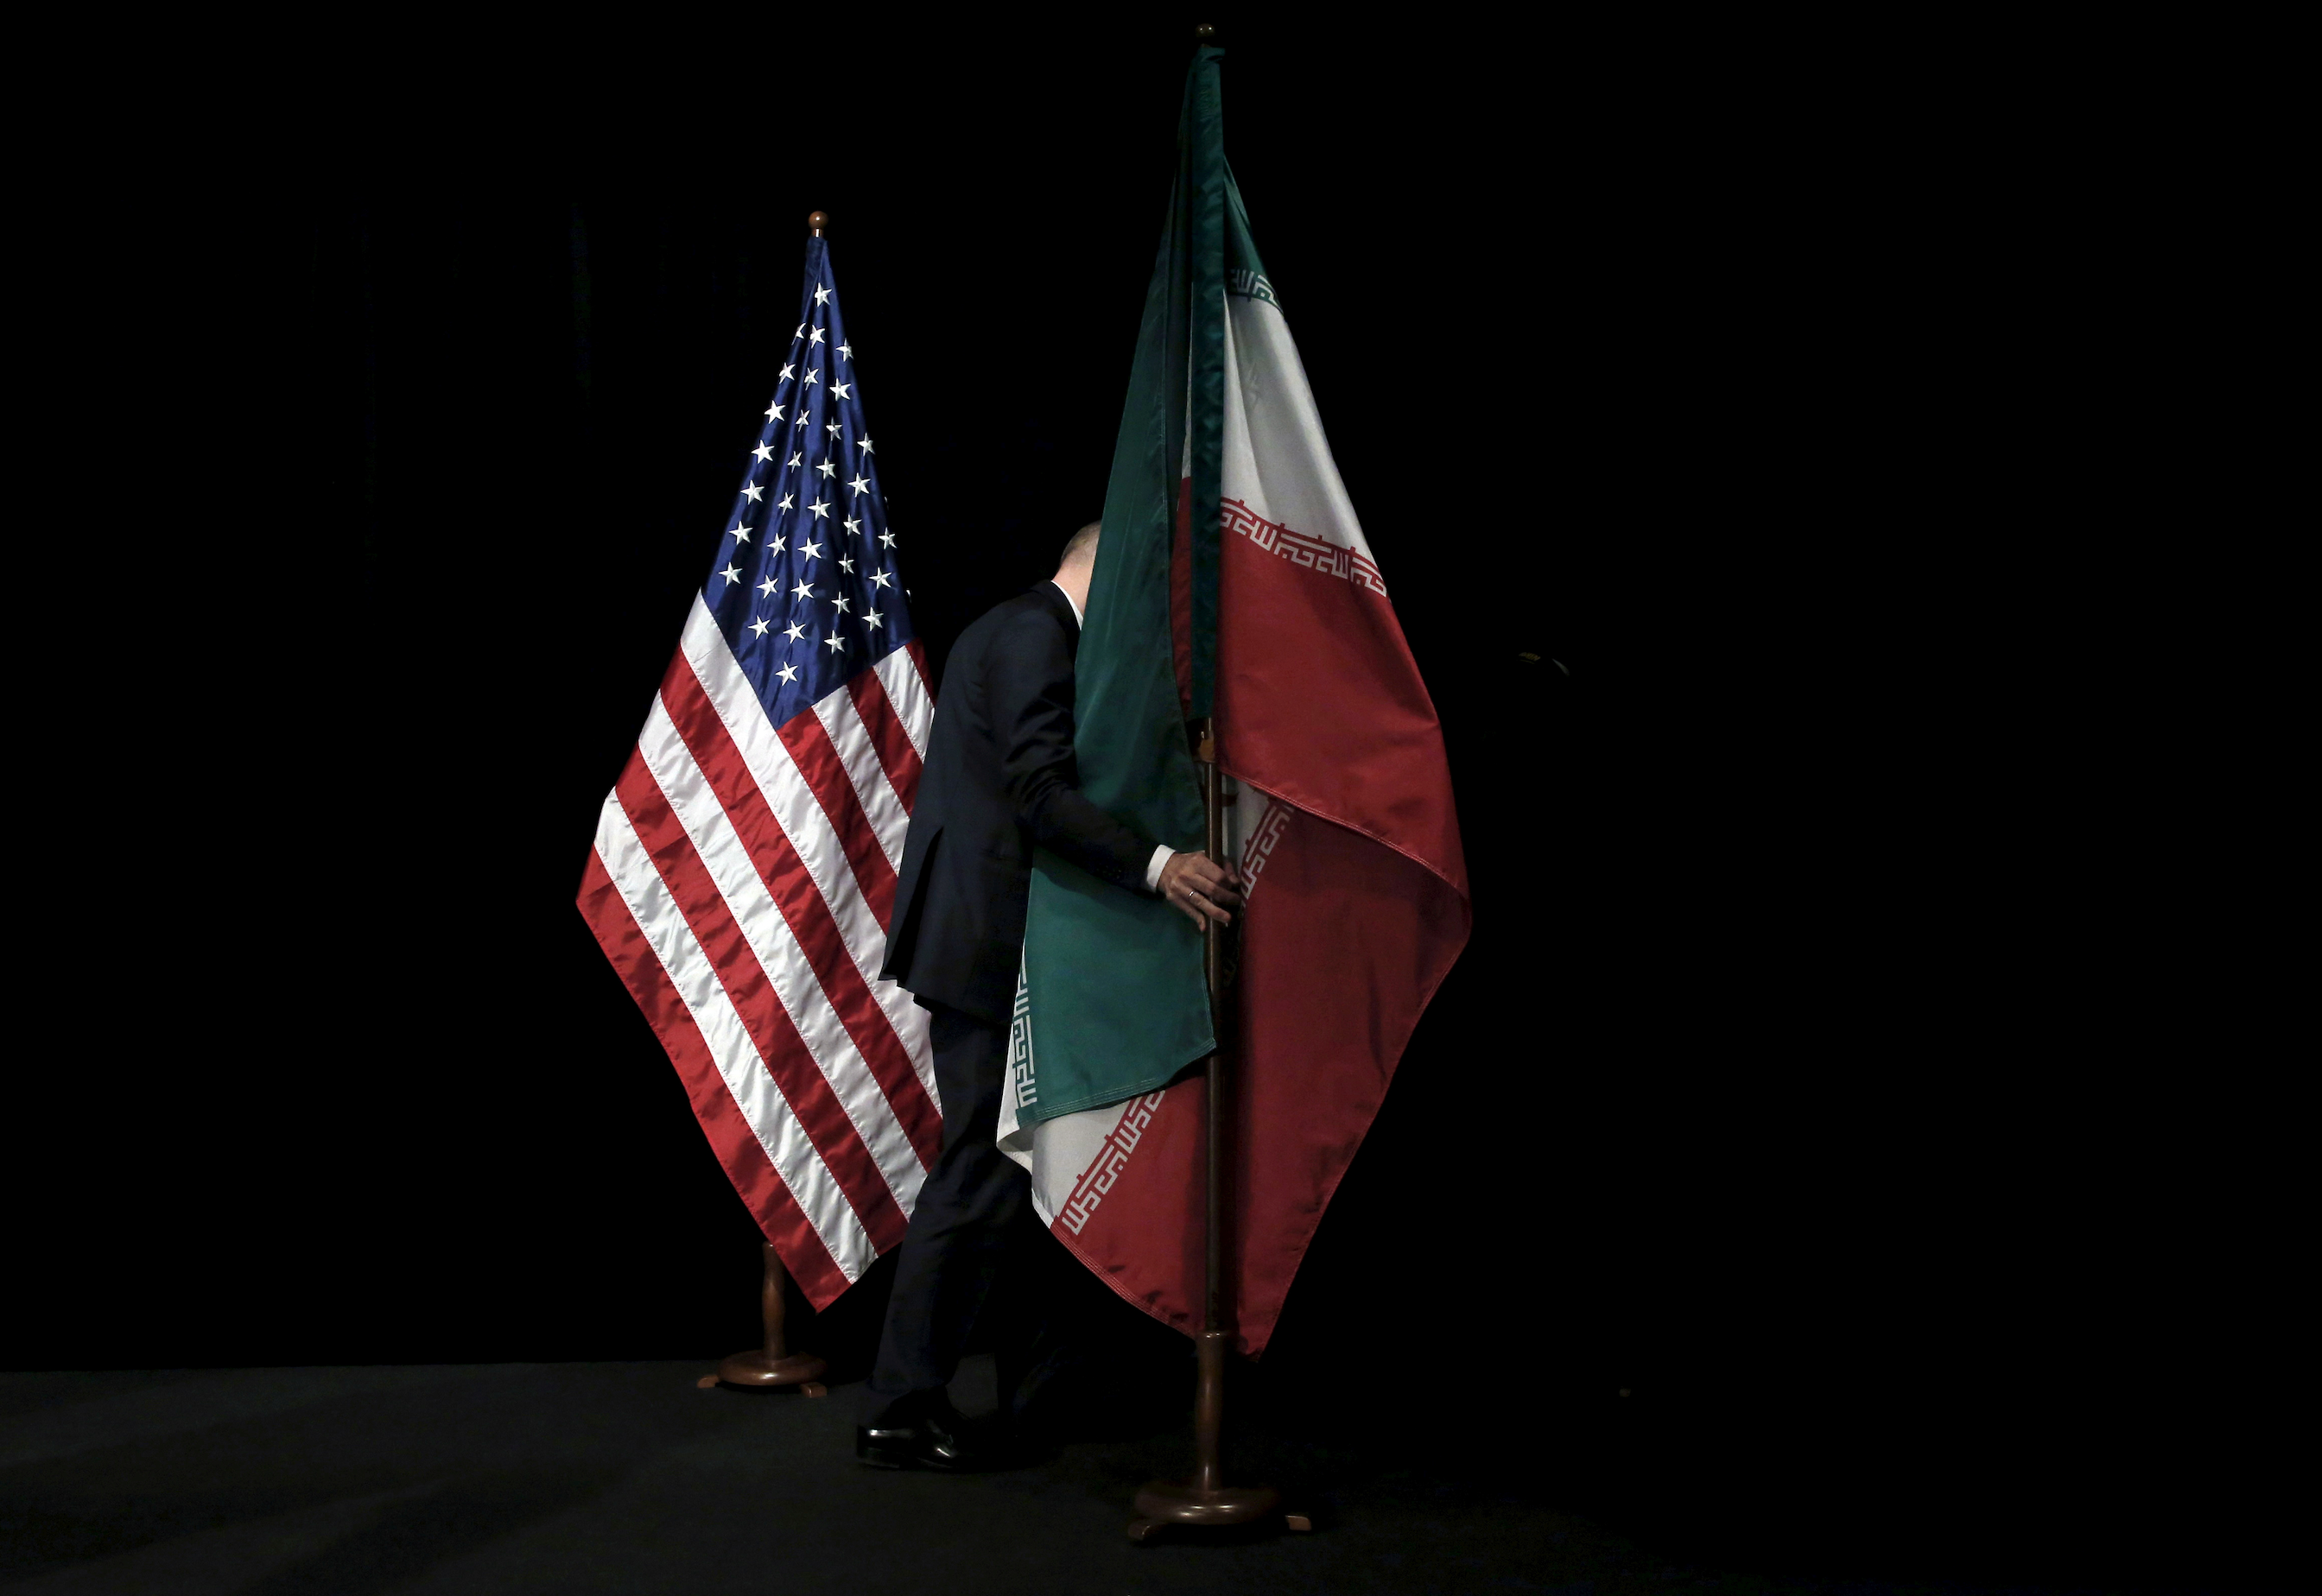 Iran, US on verge of prisoner swap, sources say